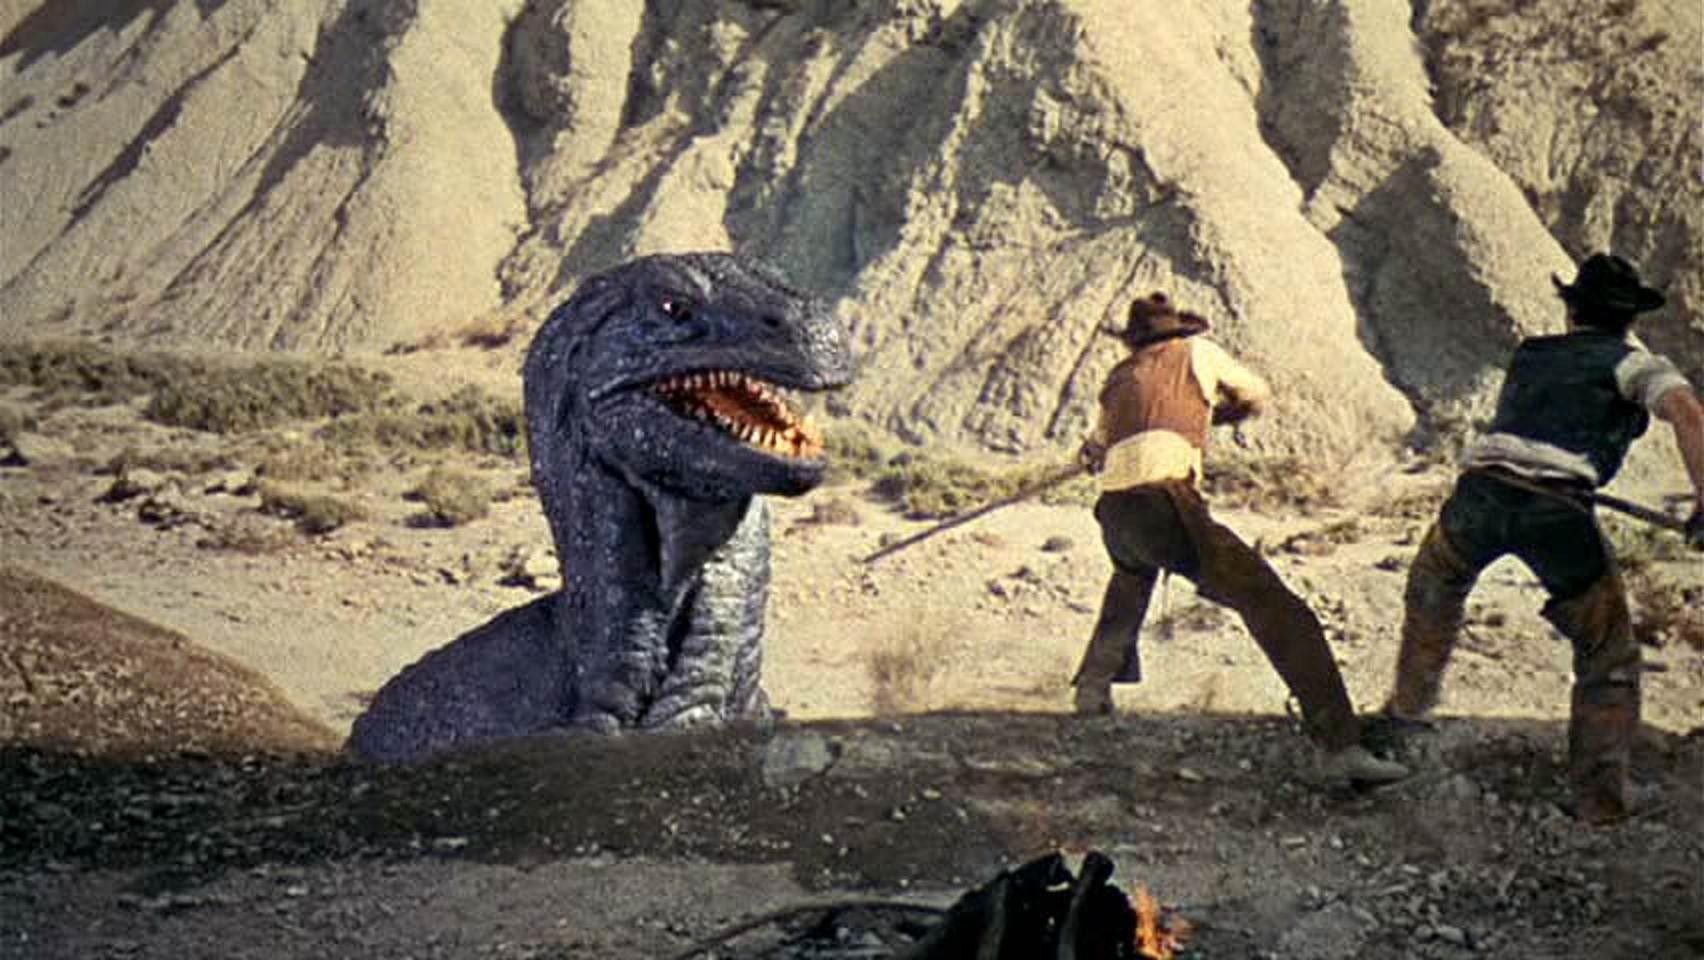 The Valley of Gwangi - Top 25 Dinosaur Movies